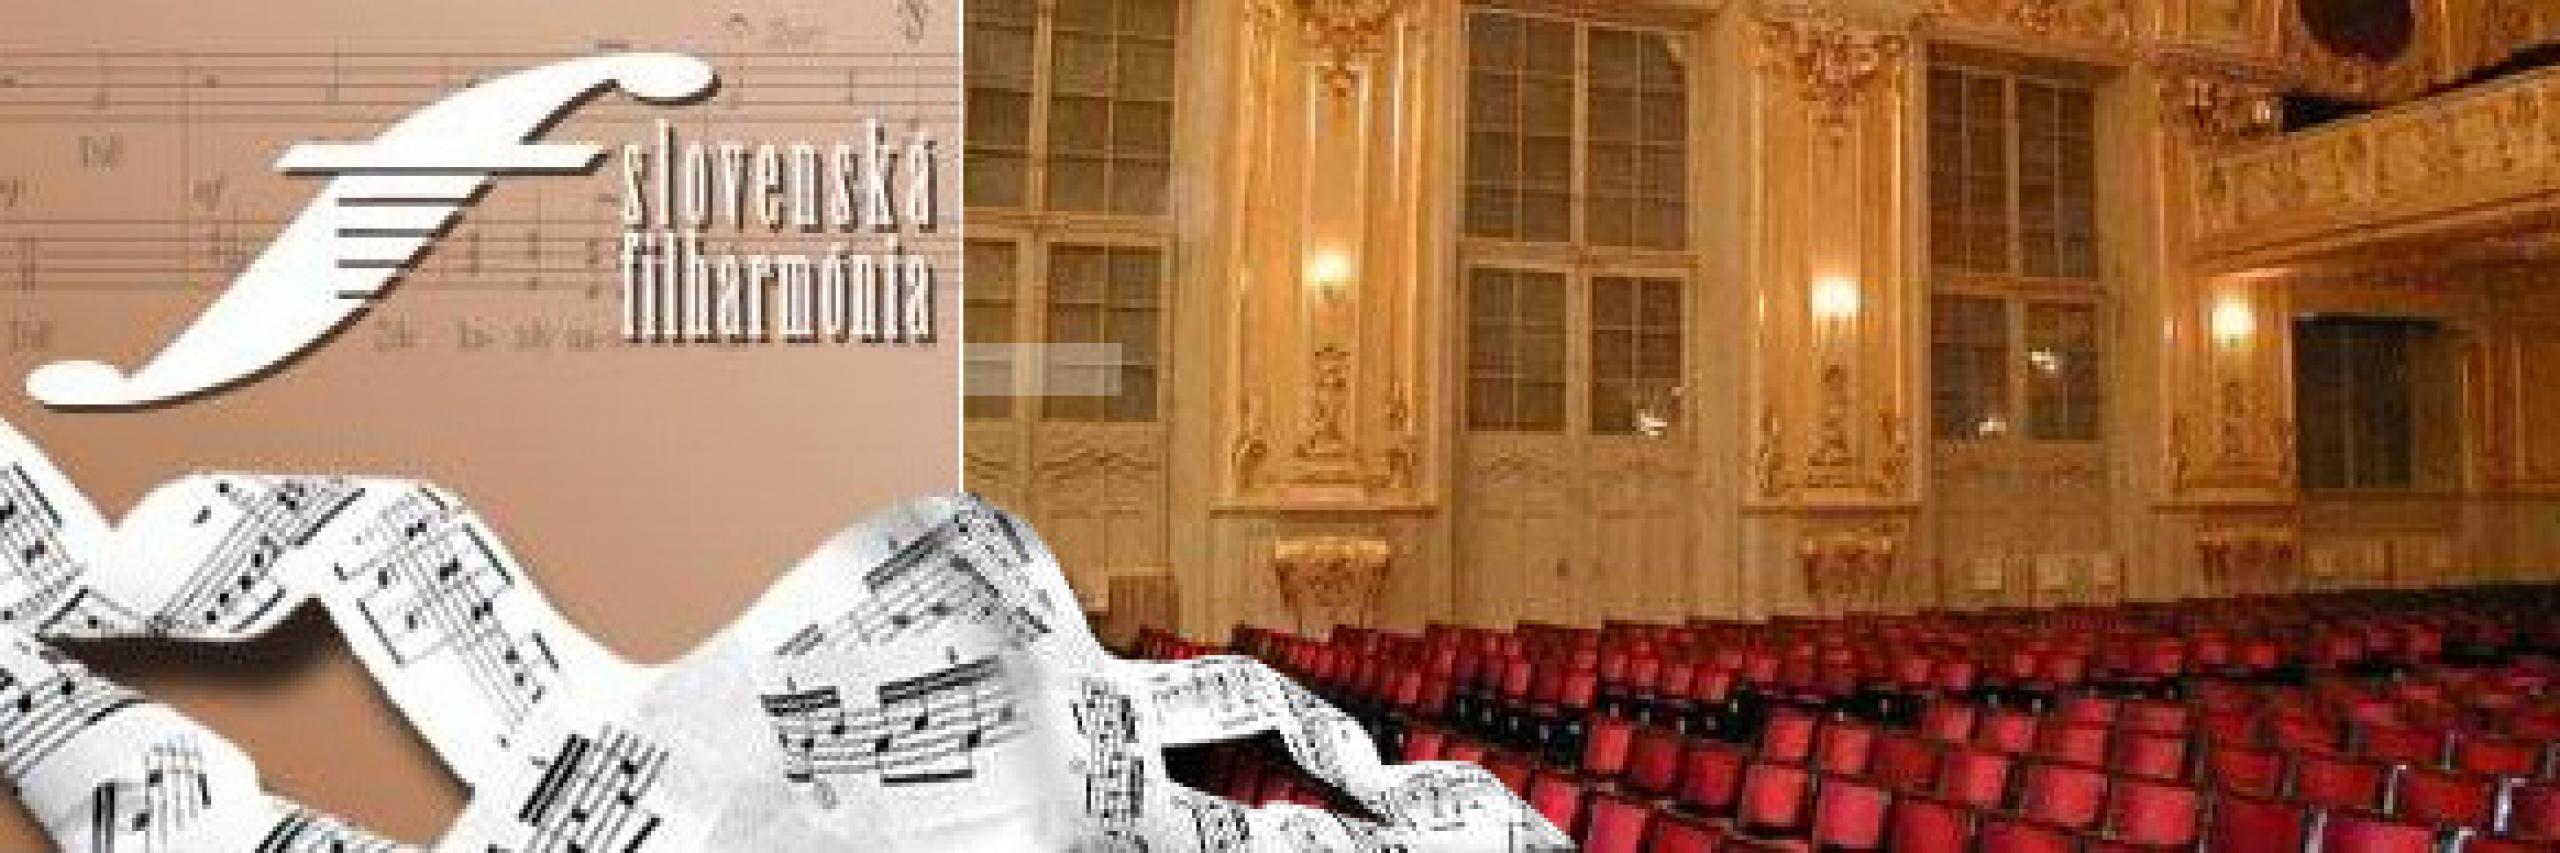 Tolkning eksistens Størrelse Bratislava - International Johann Nepomuk Hummel Piano Competition | World  Federation of International Music Competitions